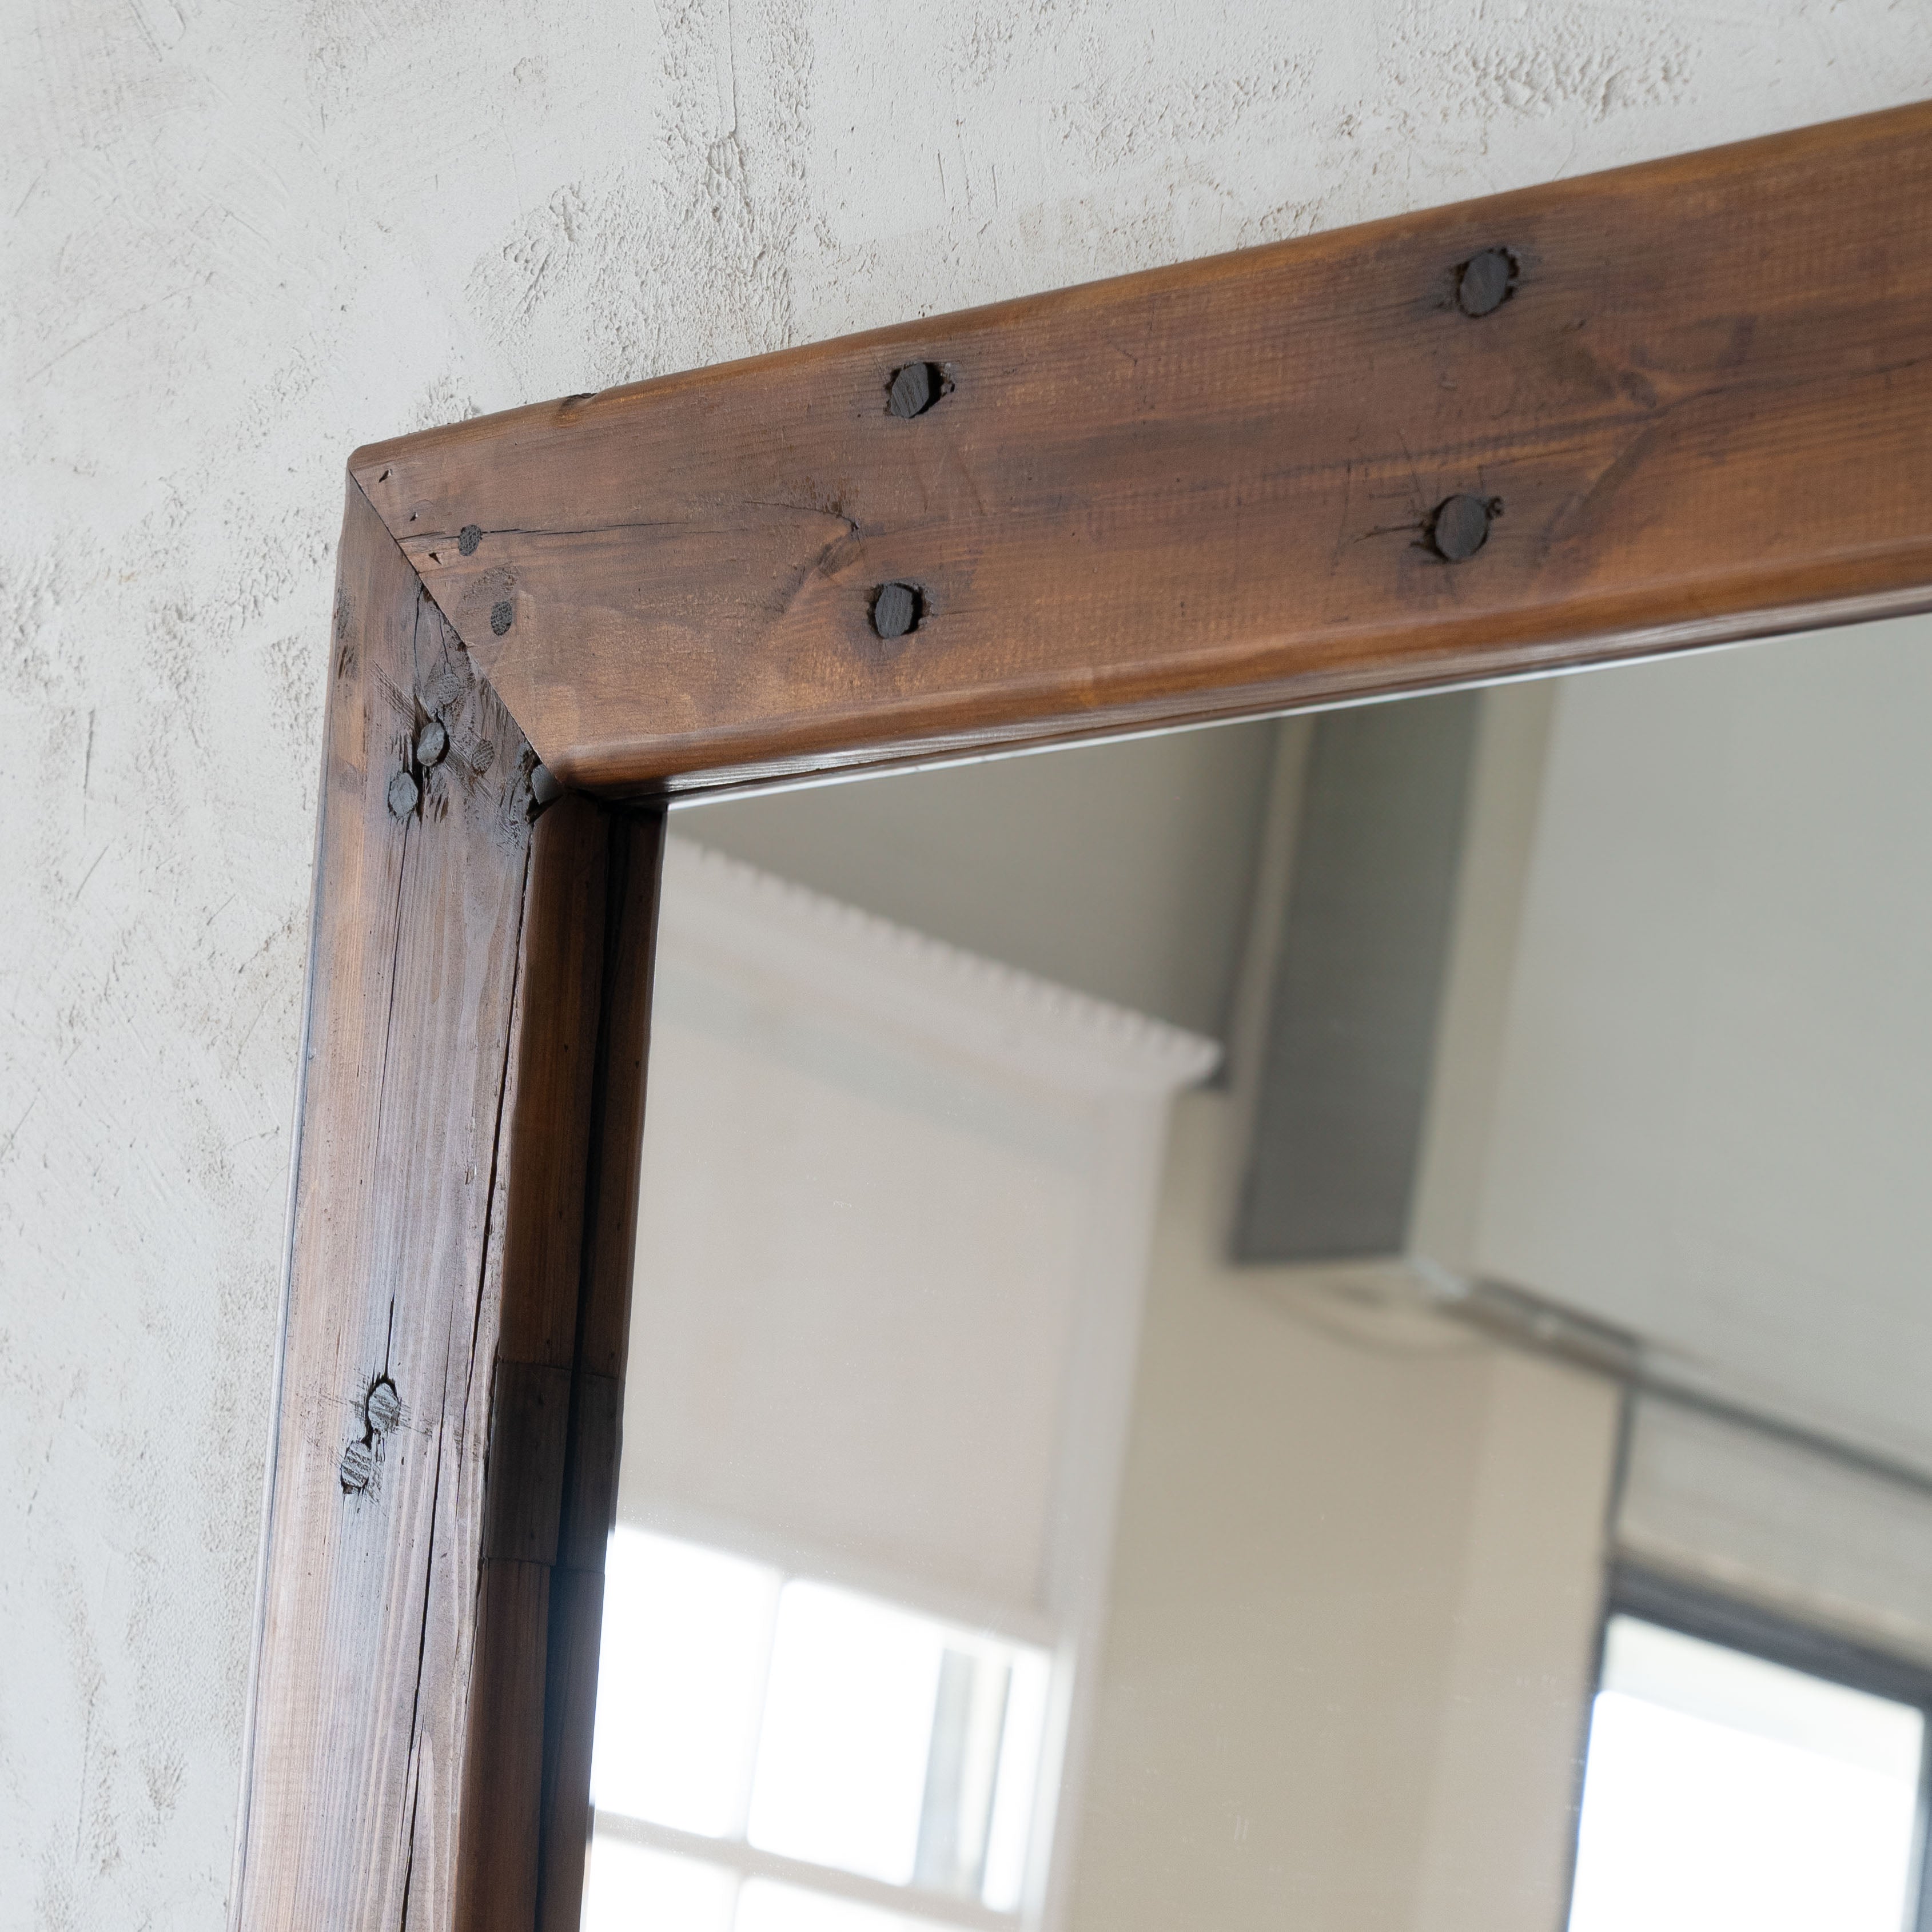 Ikou Wooden Floor Mirror  - WS Living - UAE - Floor Mirror Wood and steel Furnitures - Dubai